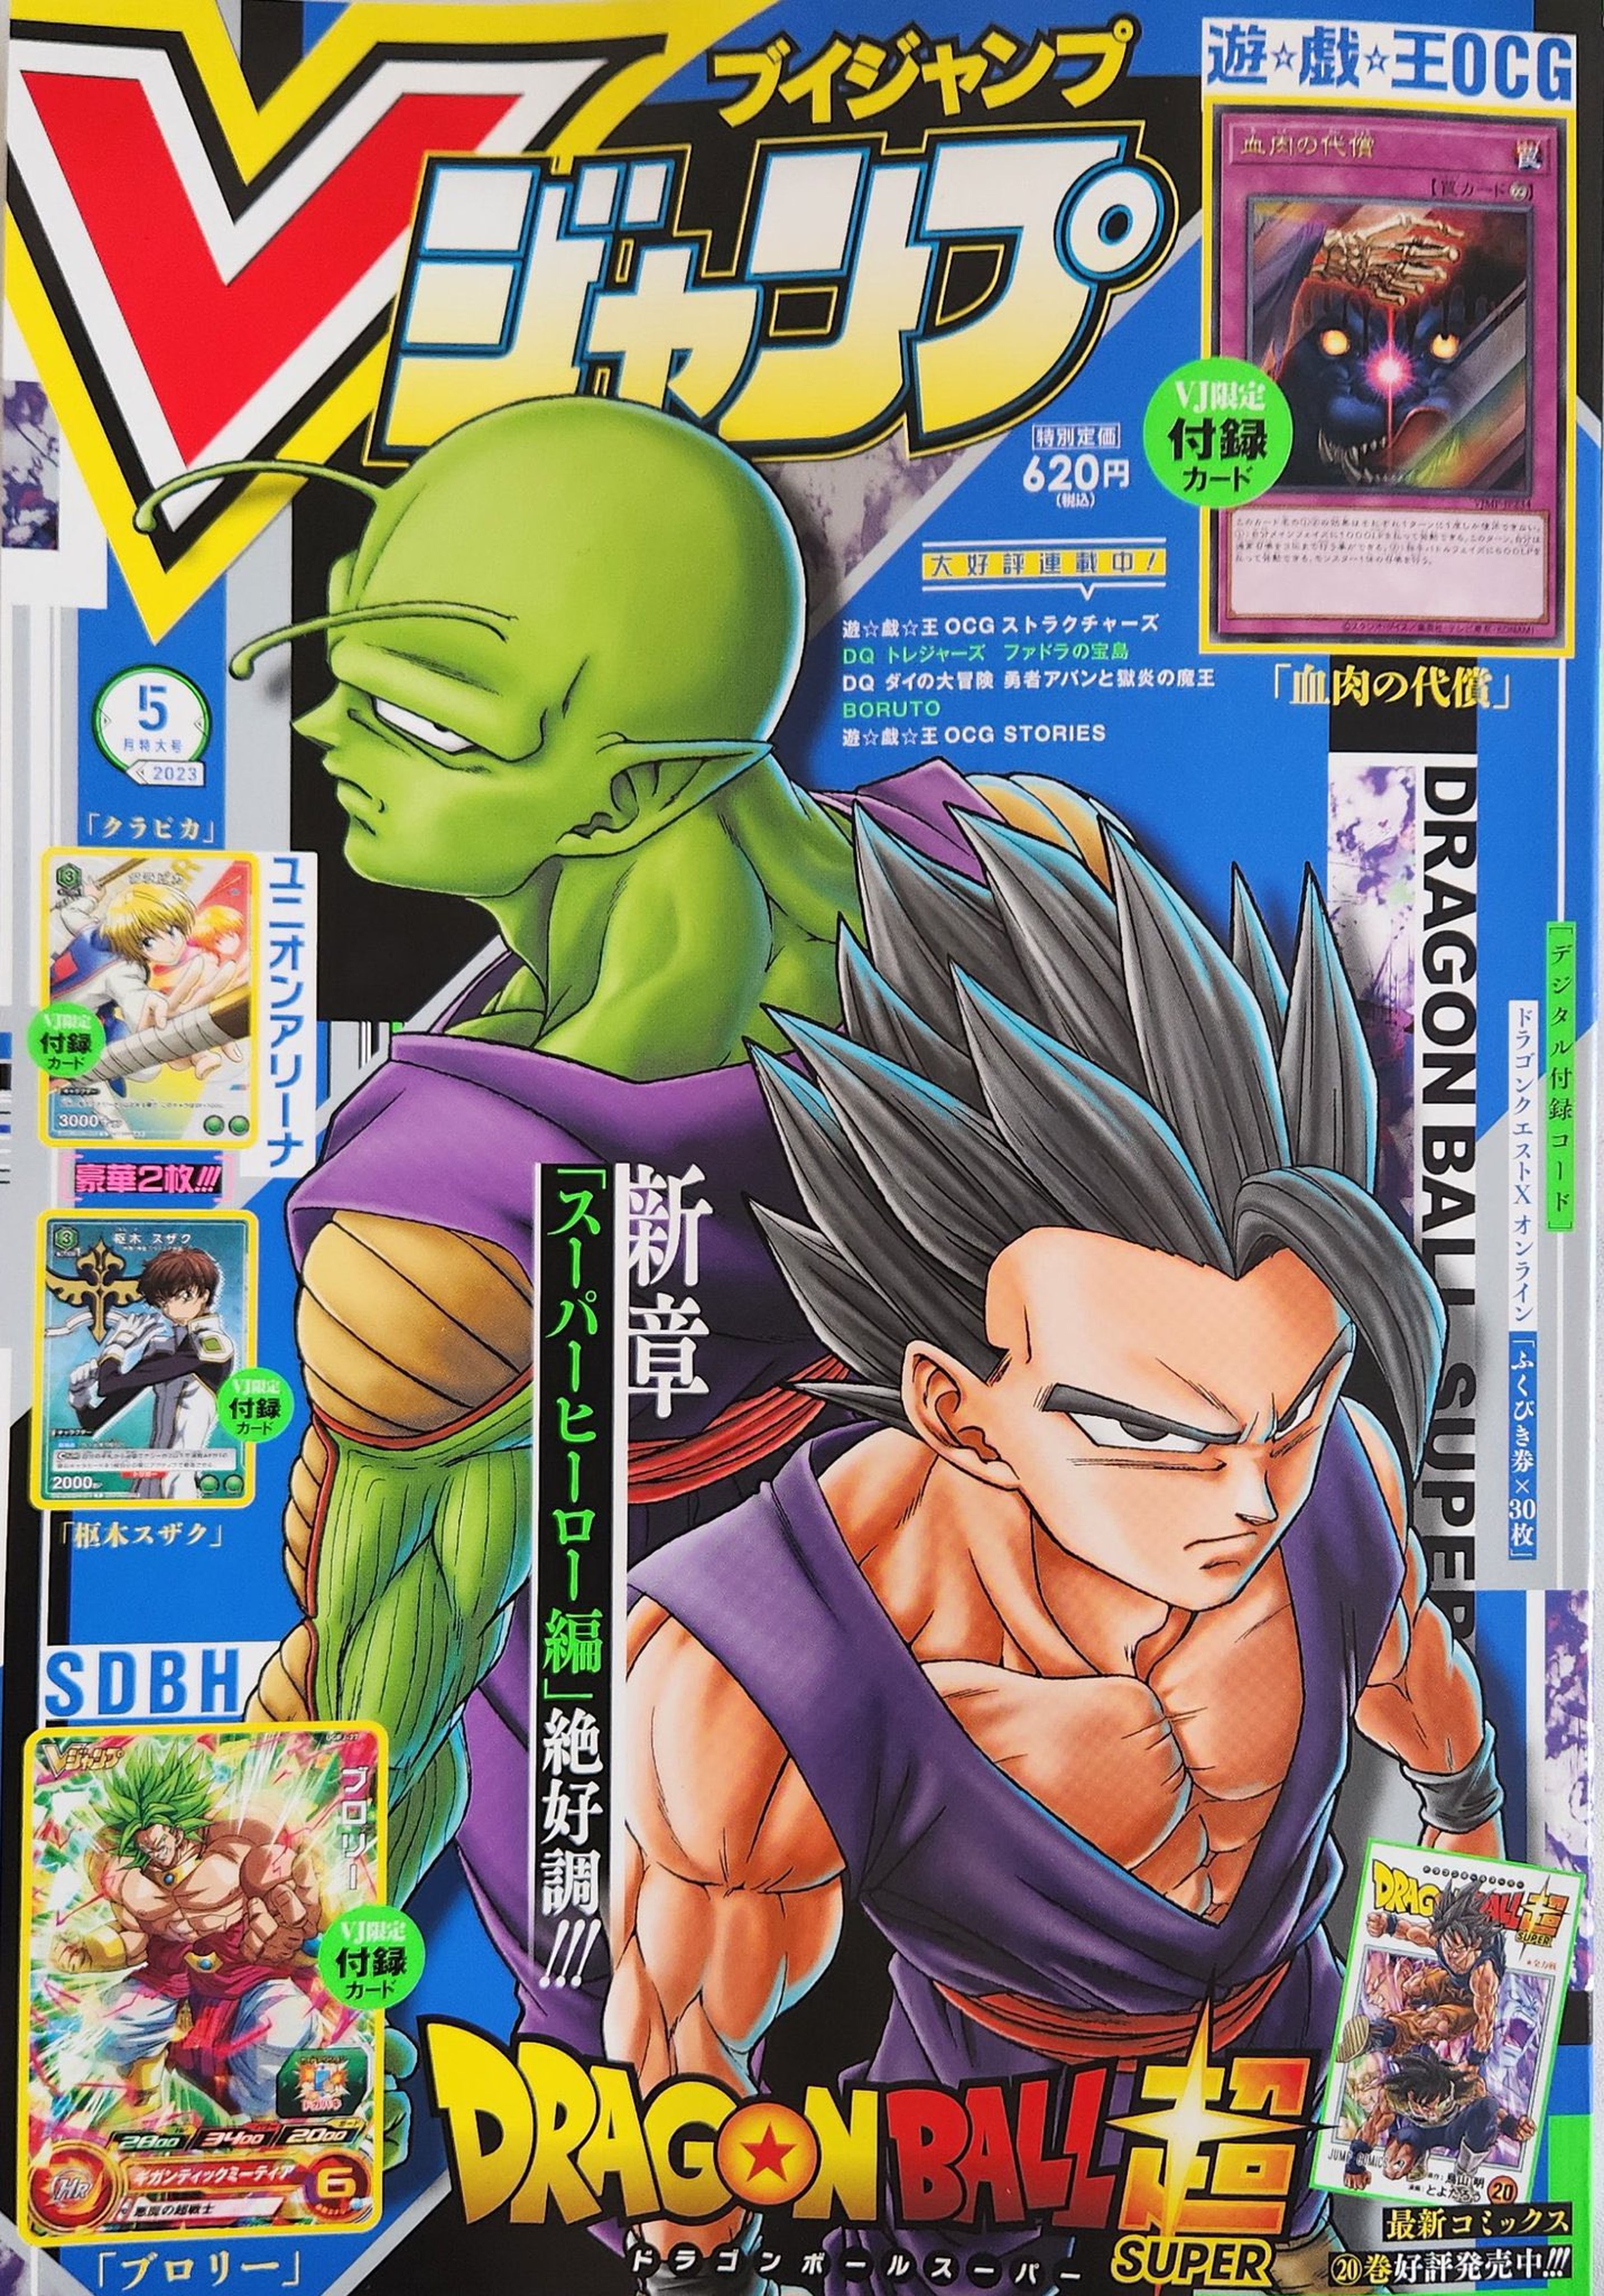 Dragon Ball: Toyotaro adaptará película Super Hero a manga